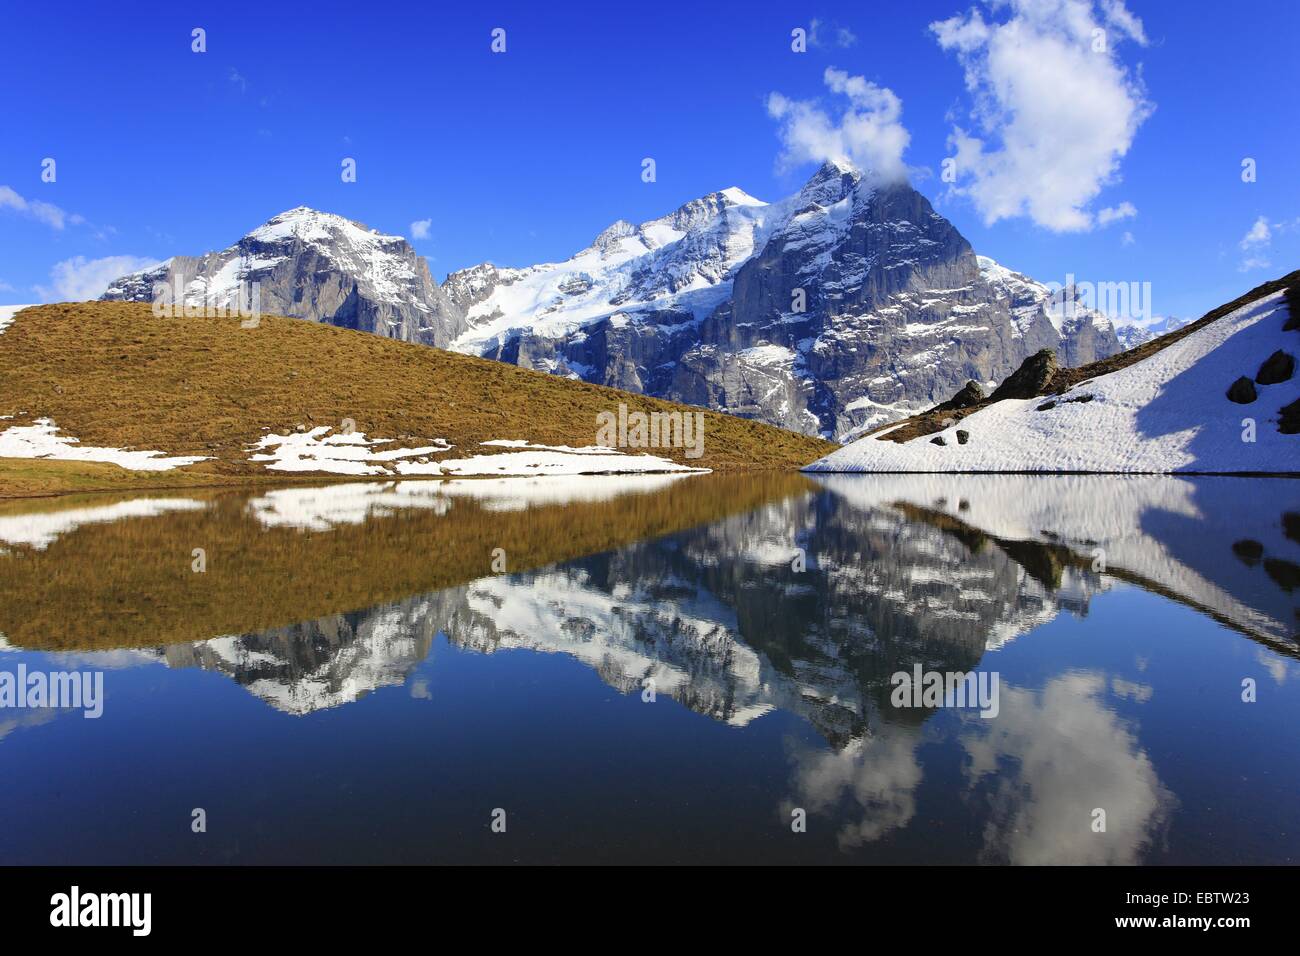 Vue sur Lac de montagne dans le Reichenbachtal au montagnes neige-couvertes Wellhorn et Wetterhorn, Suisse, Berne, Oberland Bernois, Rosenlauital Banque D'Images